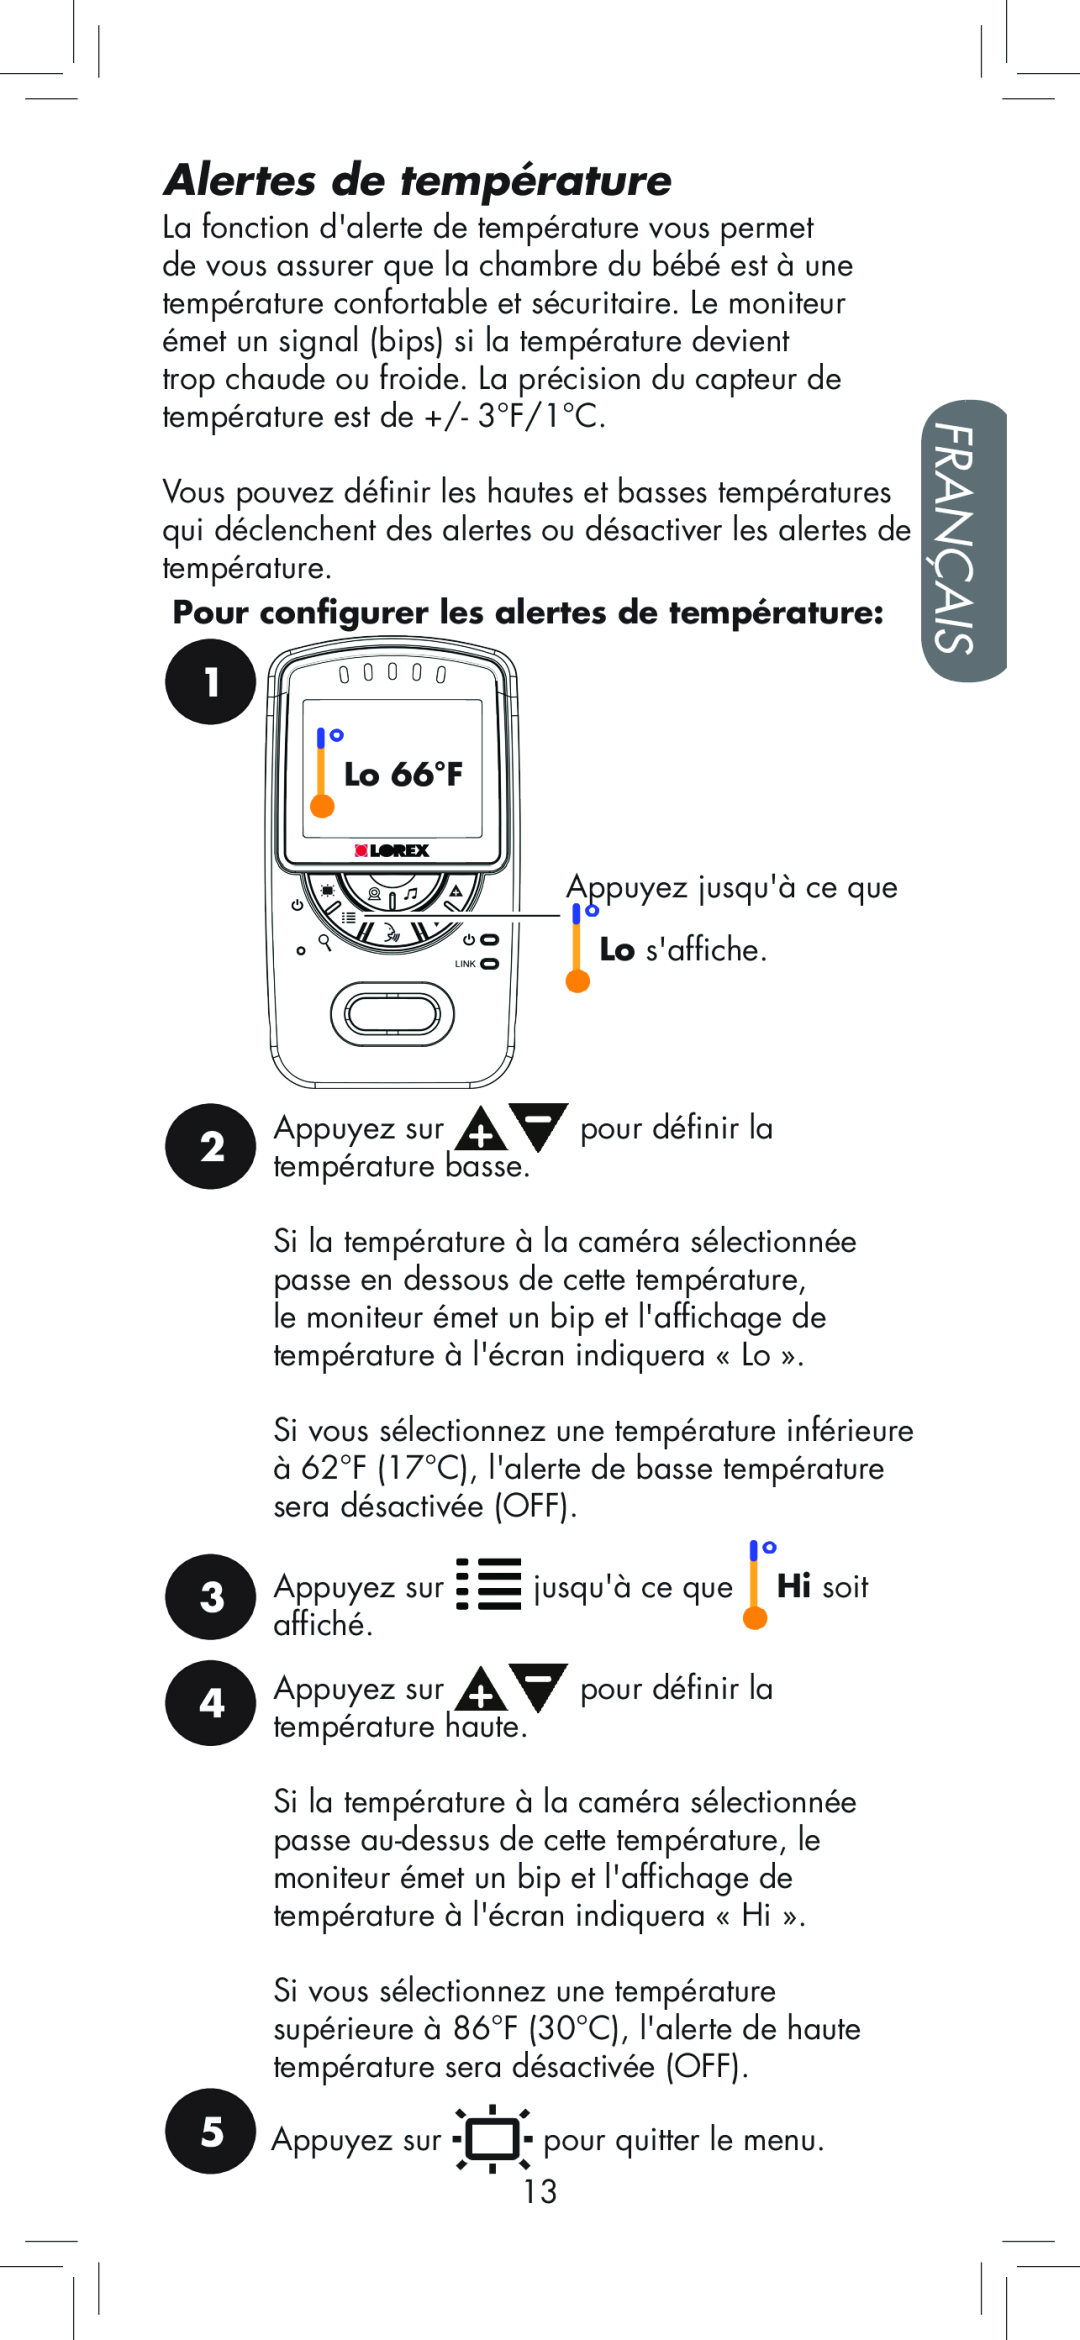 LOREX Technology BB2411 manual Alertes de température, Français, Pour configurer les alertes de température, Lo 66F 